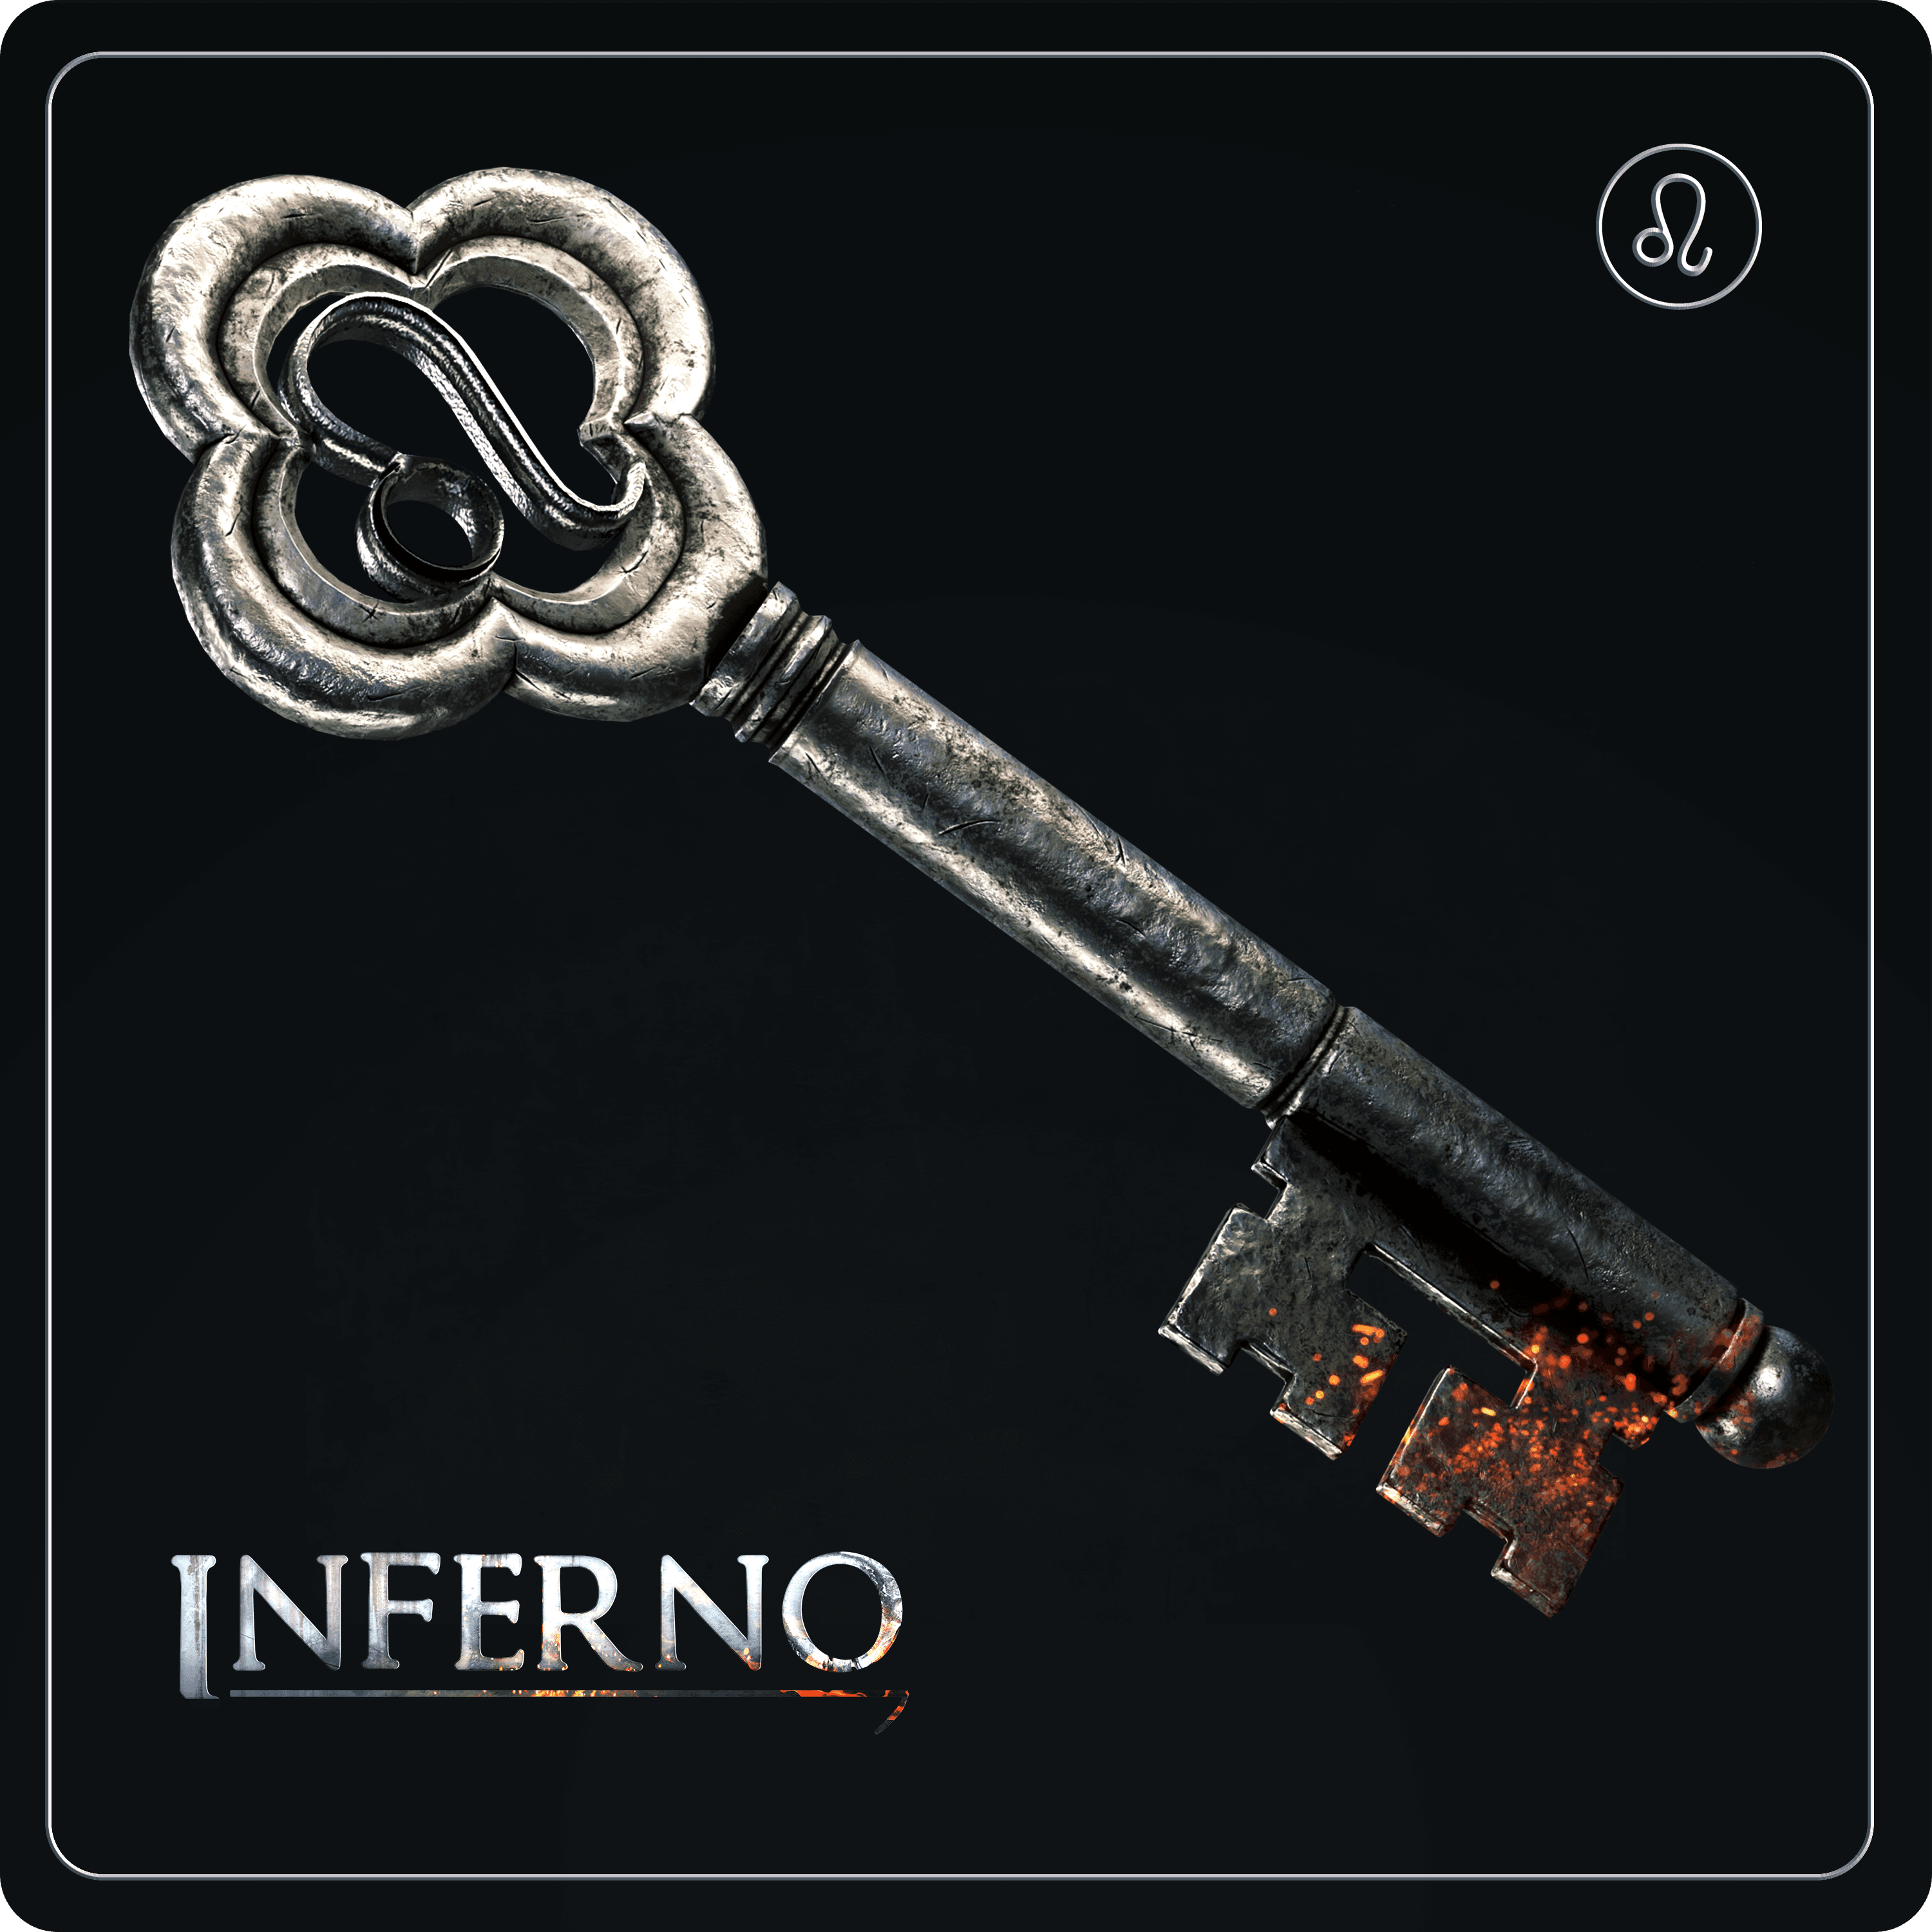 Inferno Key #102